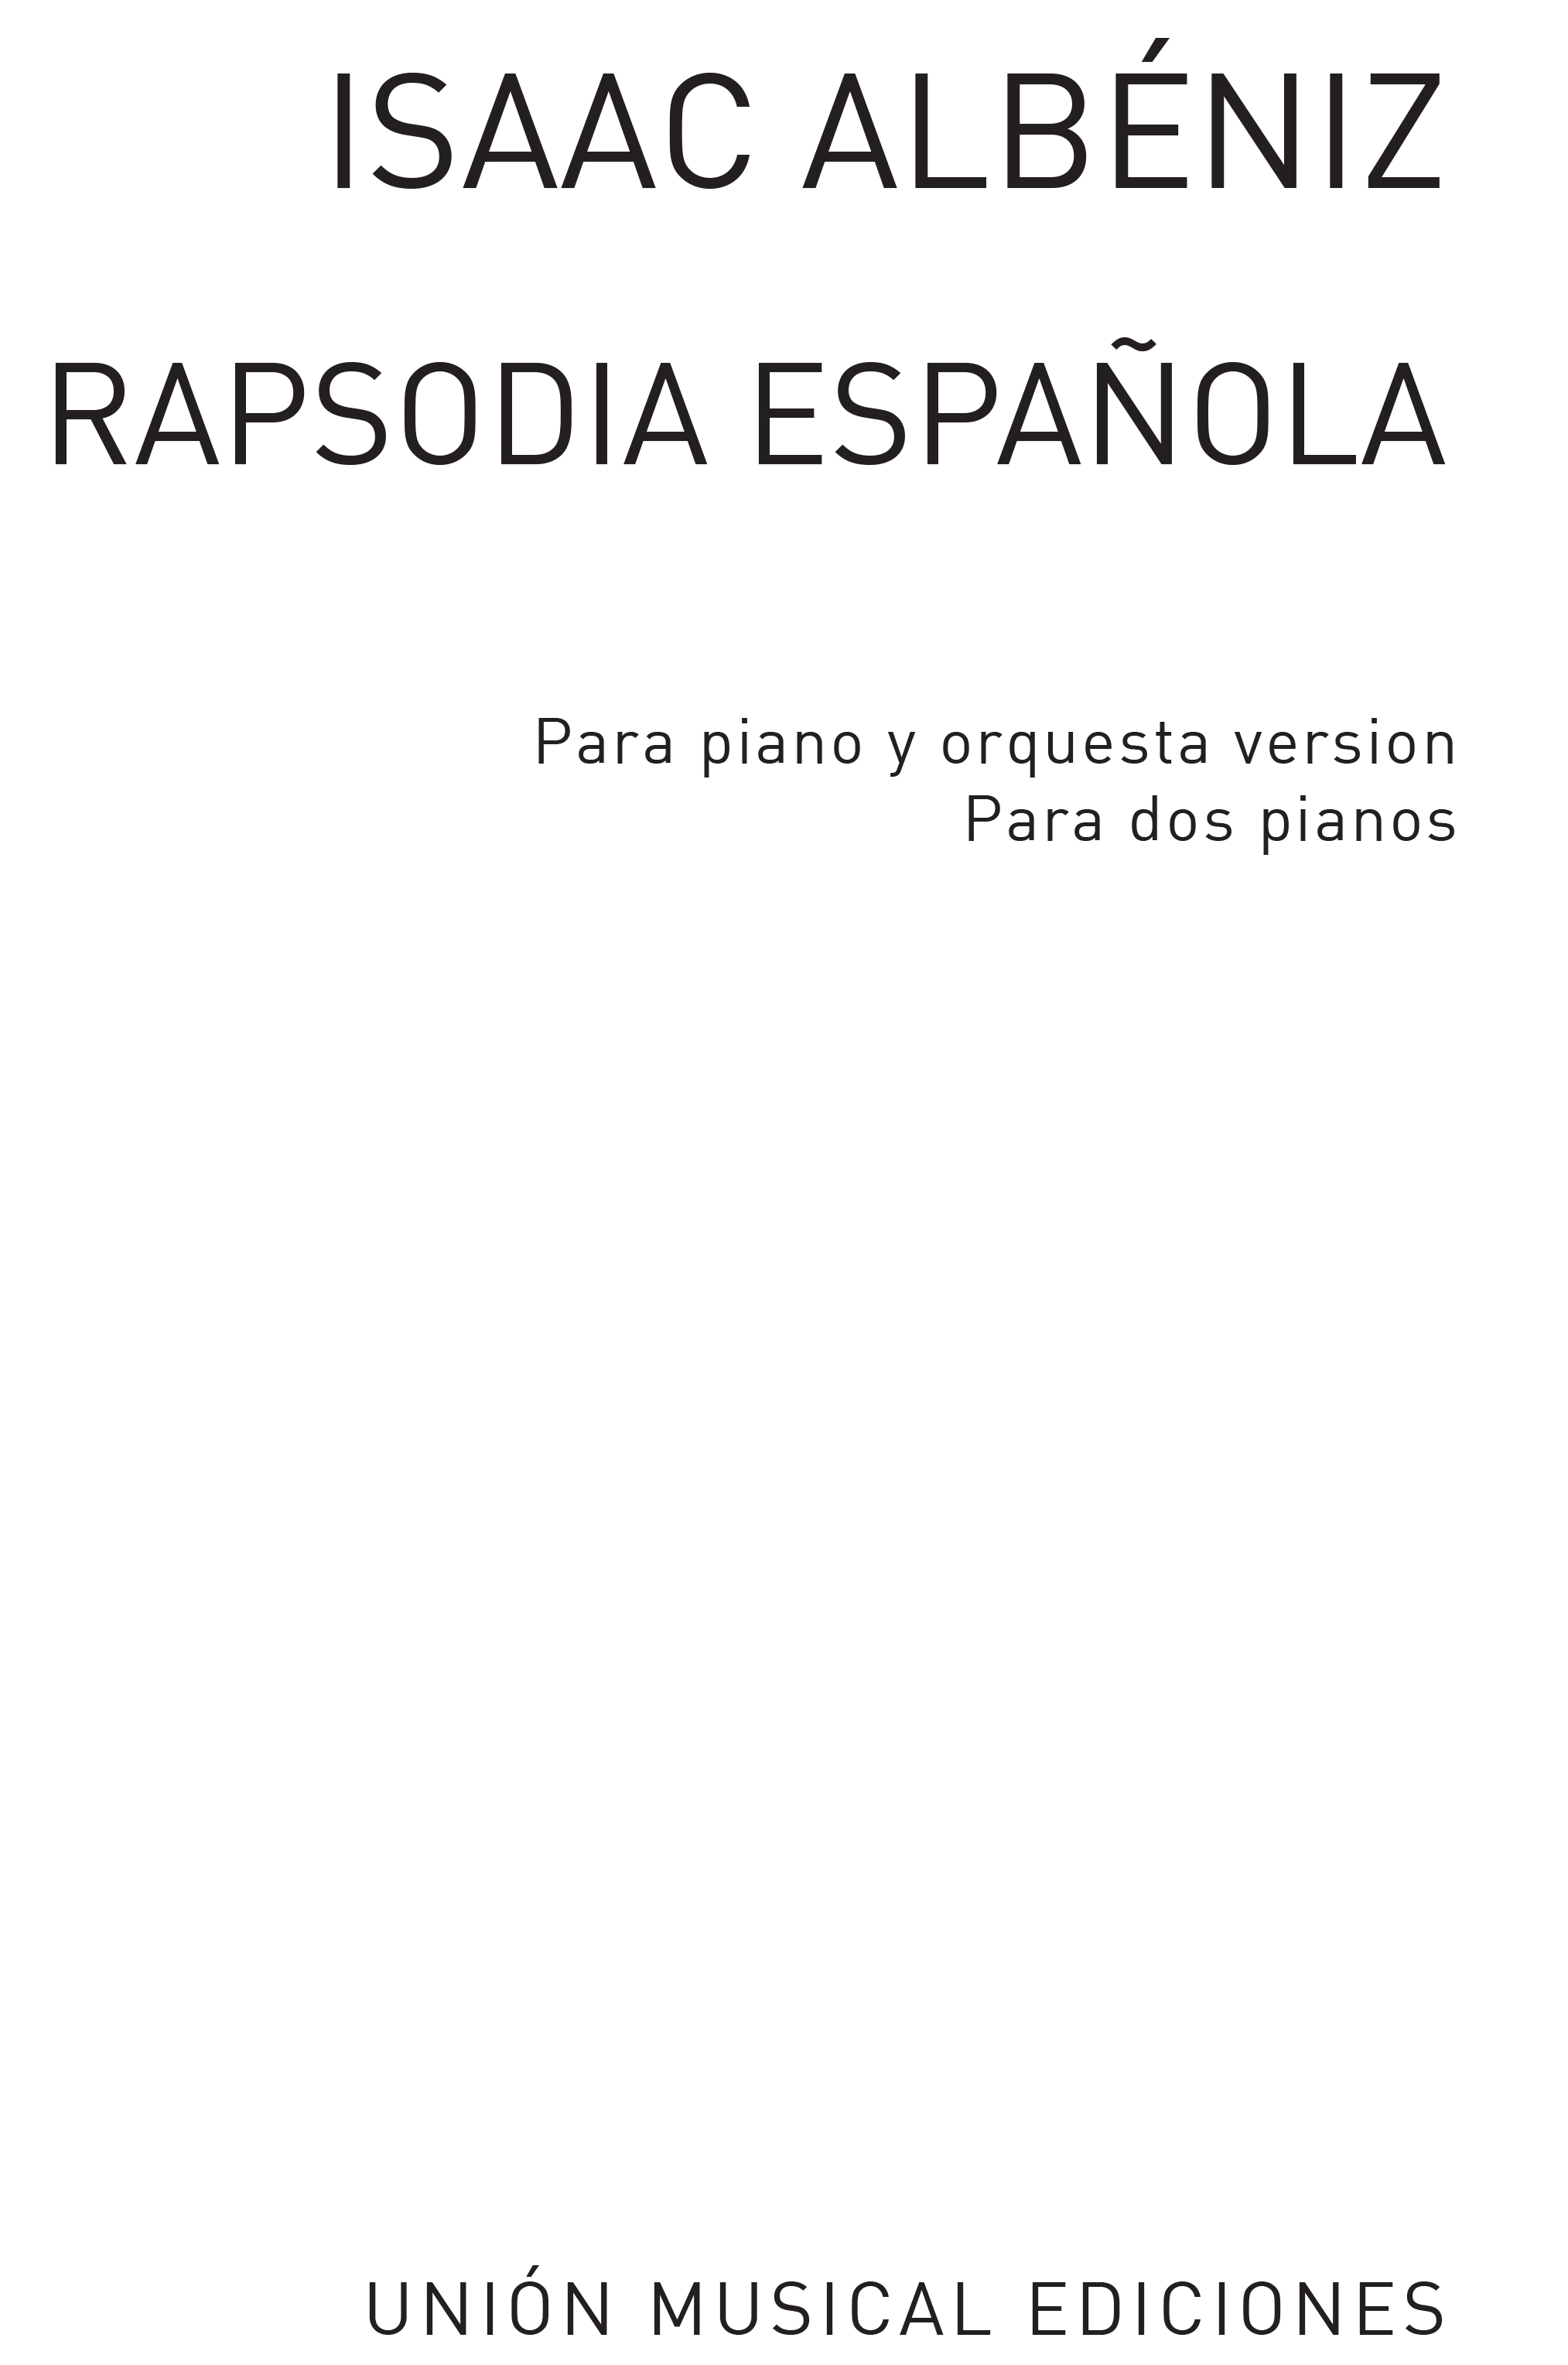 Isaac Albniz: Albeniz Rapsodia Espanola (halffter): Piano Duet: Instrumental